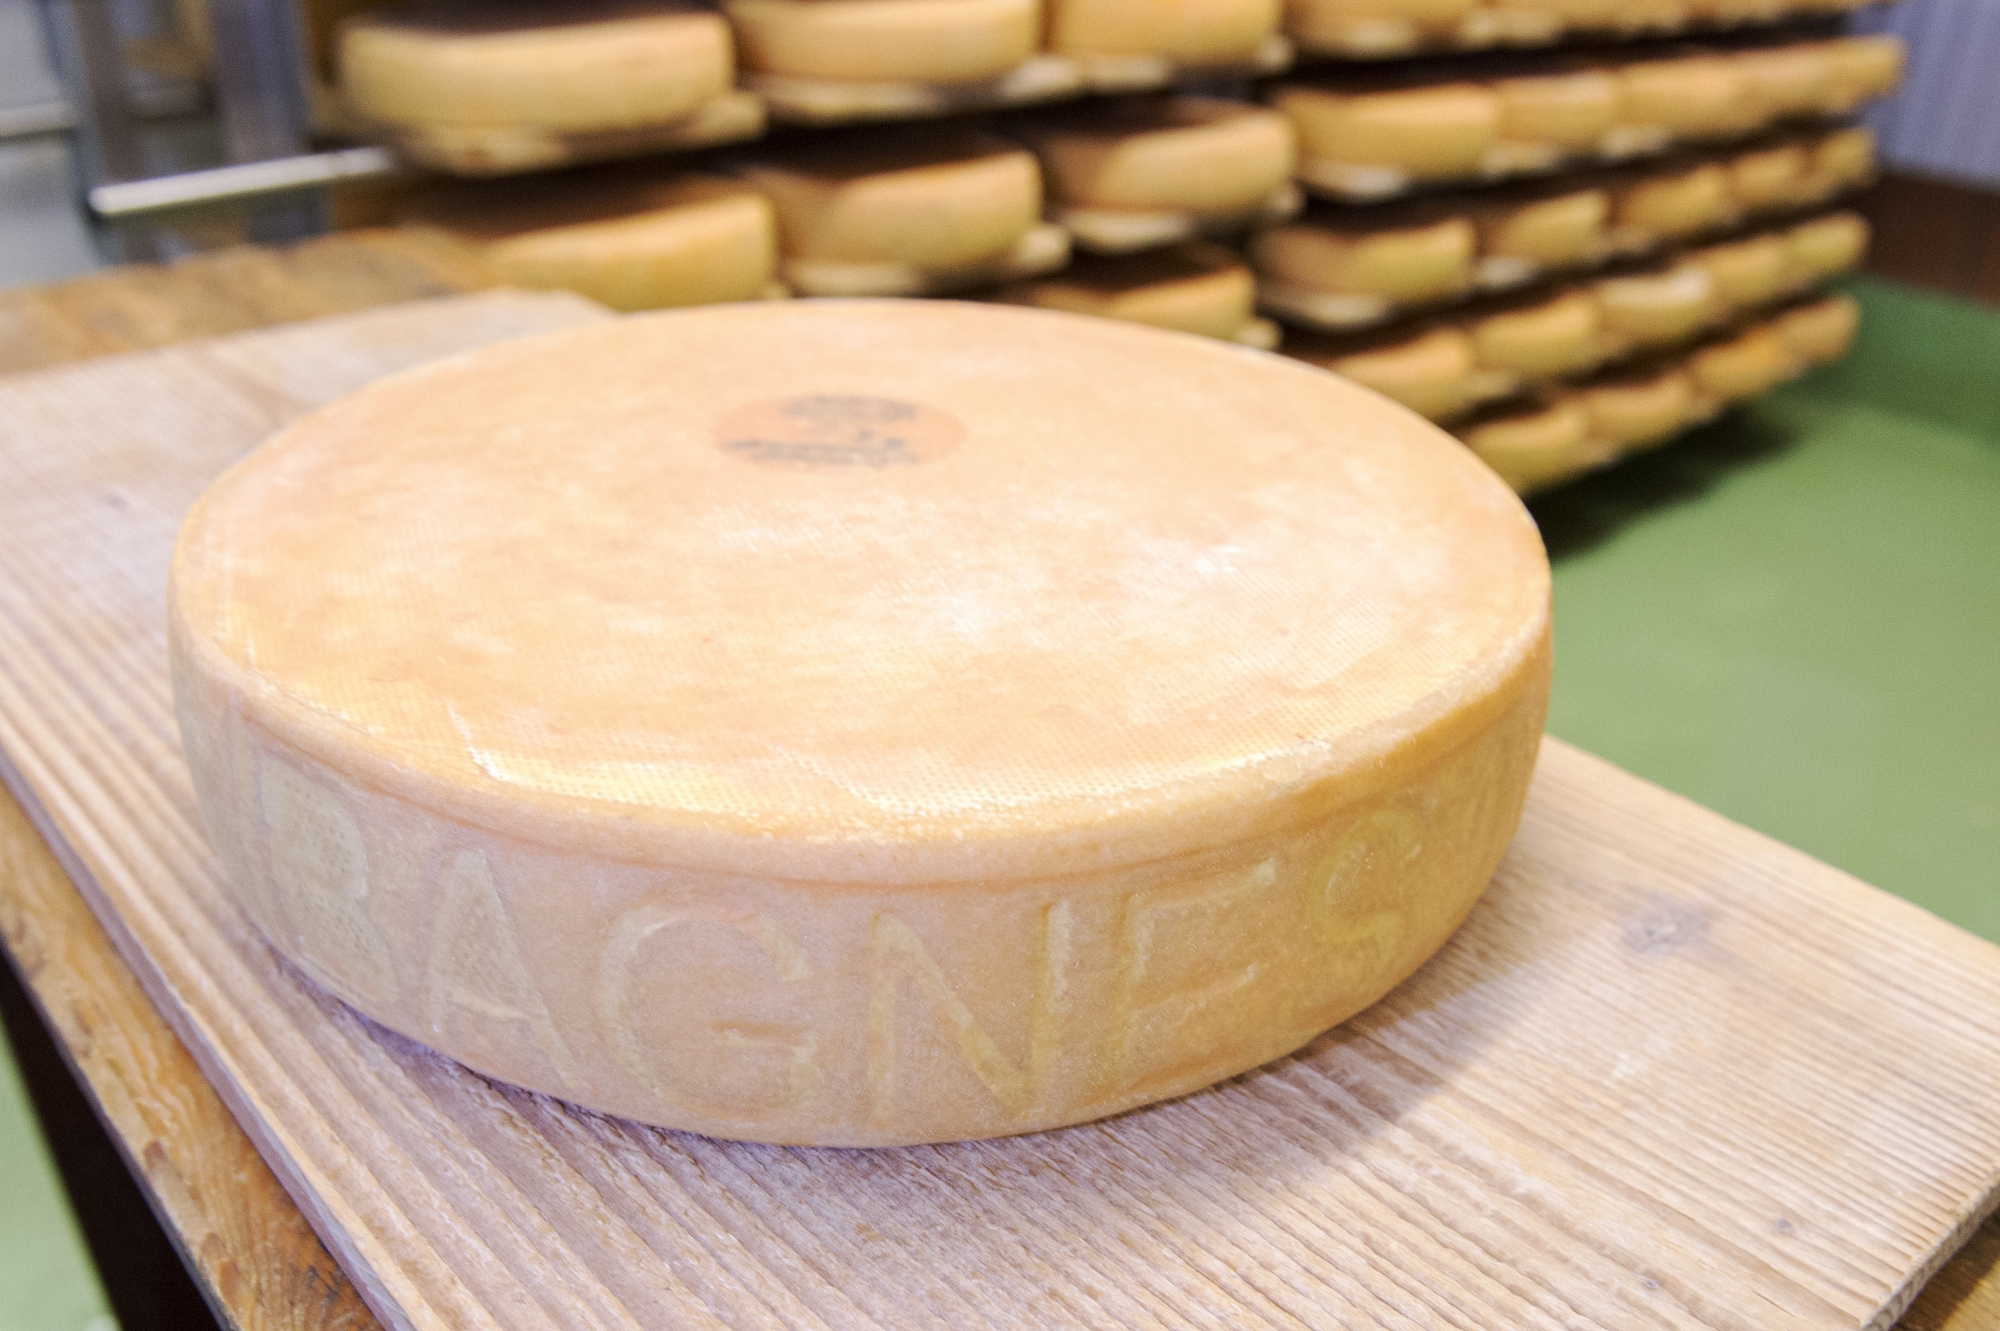 Les fromagers pourront produire des raclettes un peu plus grands à l'avenir.